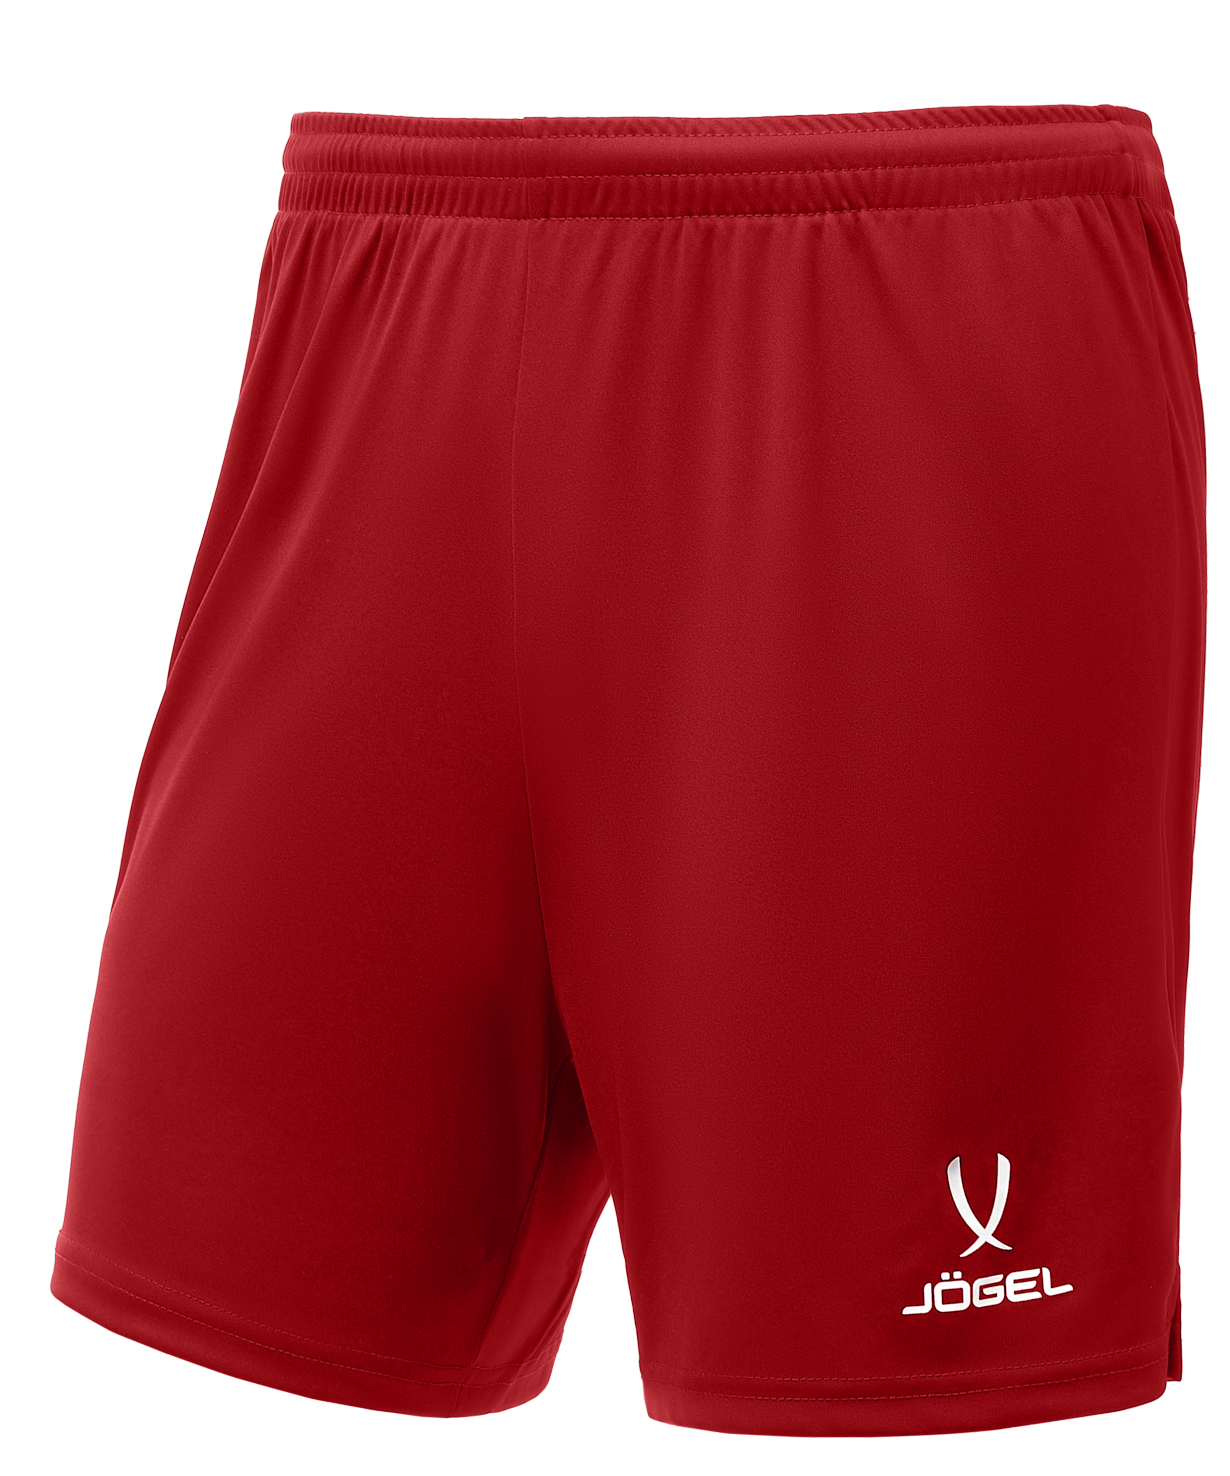 Шорты Jogel размер XS, красный. Шорты волейбольные валберис. Волейбольные шорты мужские. Шорты для волейбола мужские. Шорты для волейбола